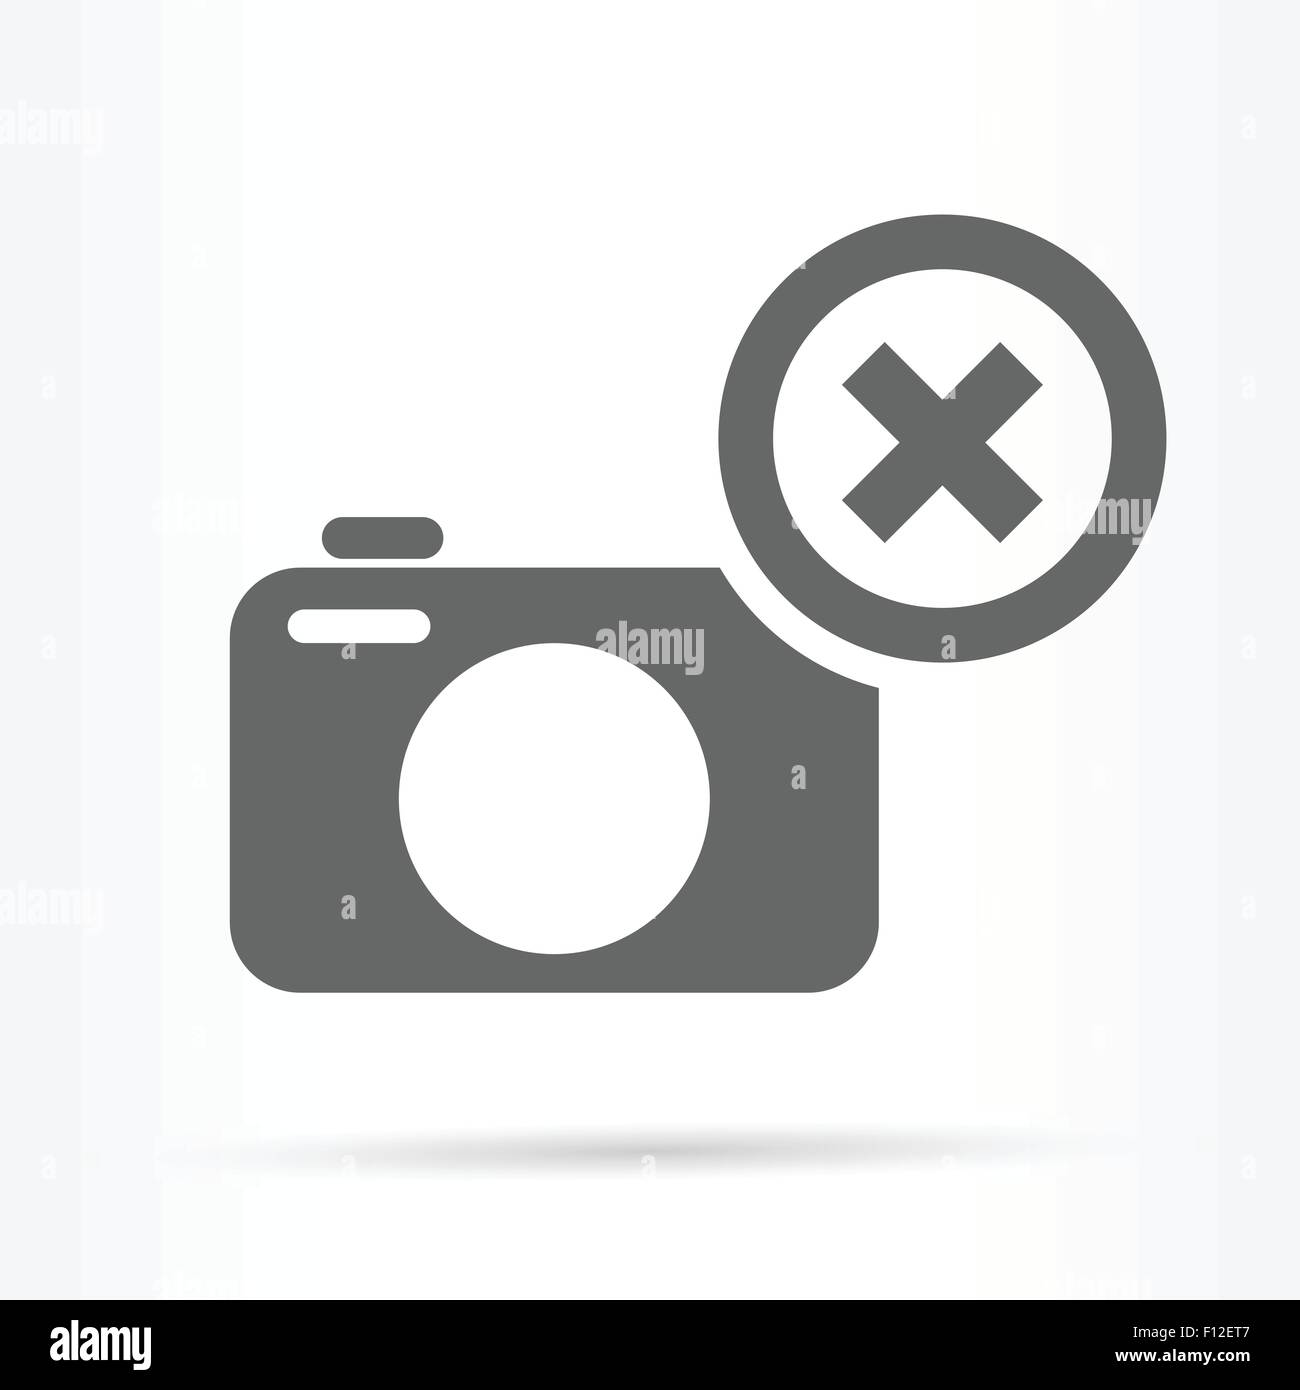 camera delete image symbol icon web vector illustration Stock Vector